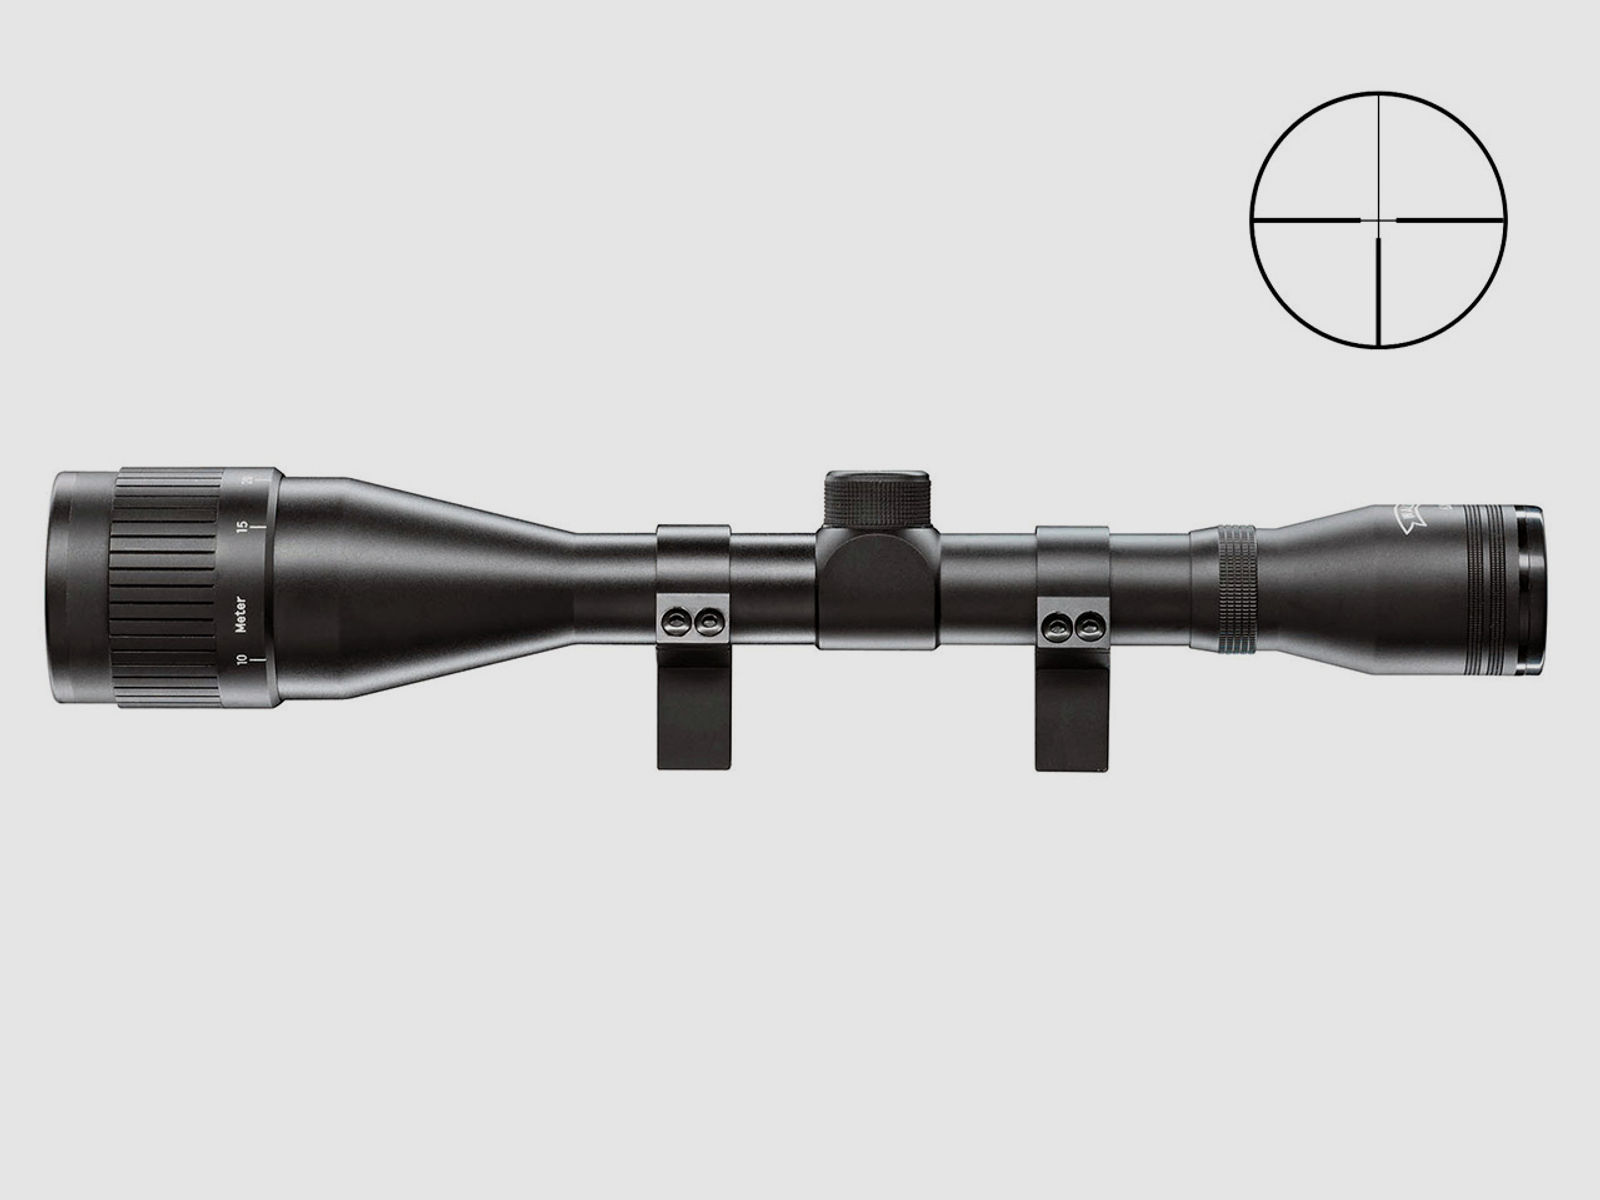 Zielfernrohr Walther 6x42 Absehen 4 Parallaxeverstellung am Objektiv 1 Zoll Tubus inklusive Ringmontagen fĂĽr 11 mm Prismenschienen